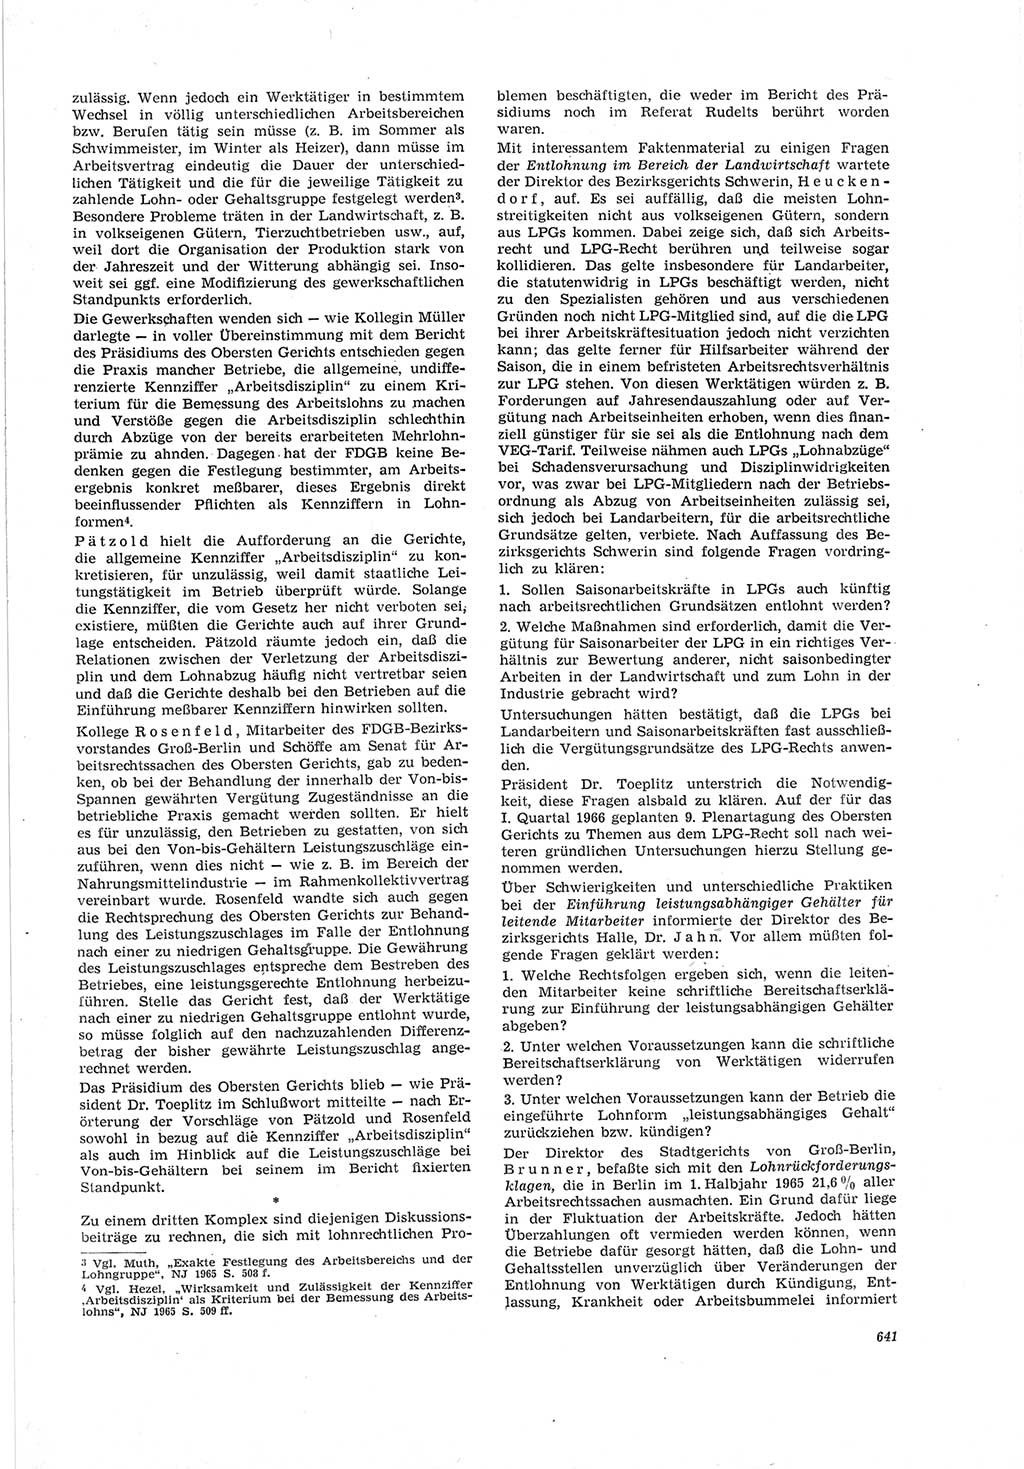 Neue Justiz (NJ), Zeitschrift für Recht und Rechtswissenschaft [Deutsche Demokratische Republik (DDR)], 19. Jahrgang 1965, Seite 641 (NJ DDR 1965, S. 641)